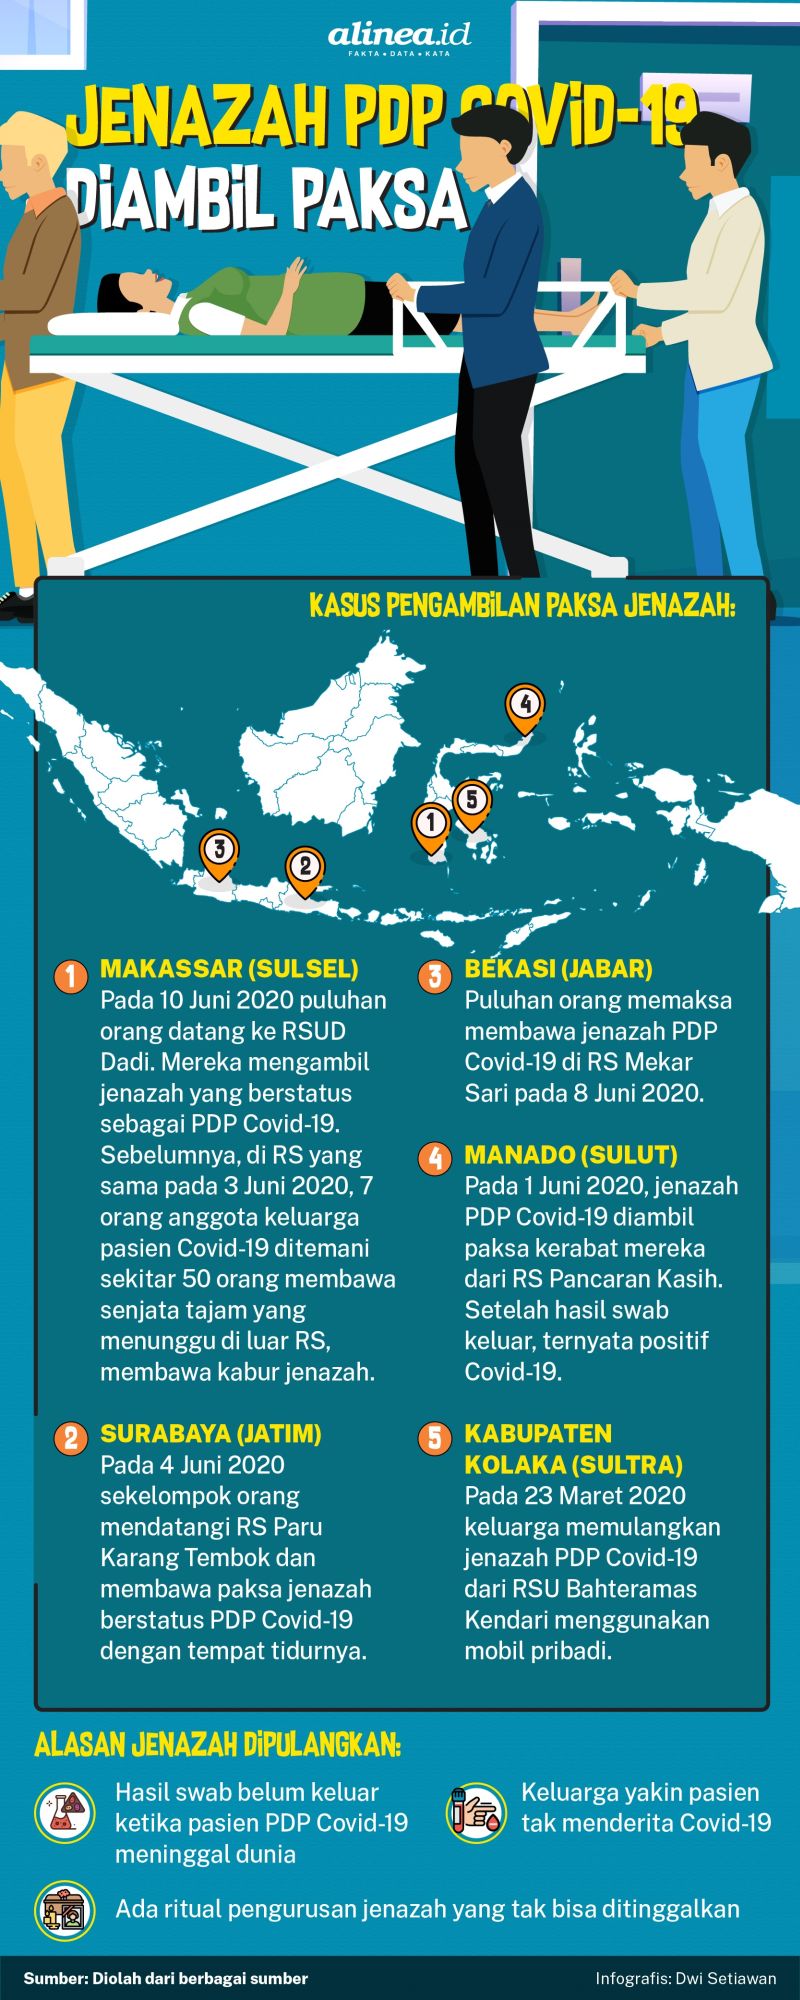 Infografik pengambilan paksa jenazah Covid-19. Alinea.id/Dwi Setiawan.